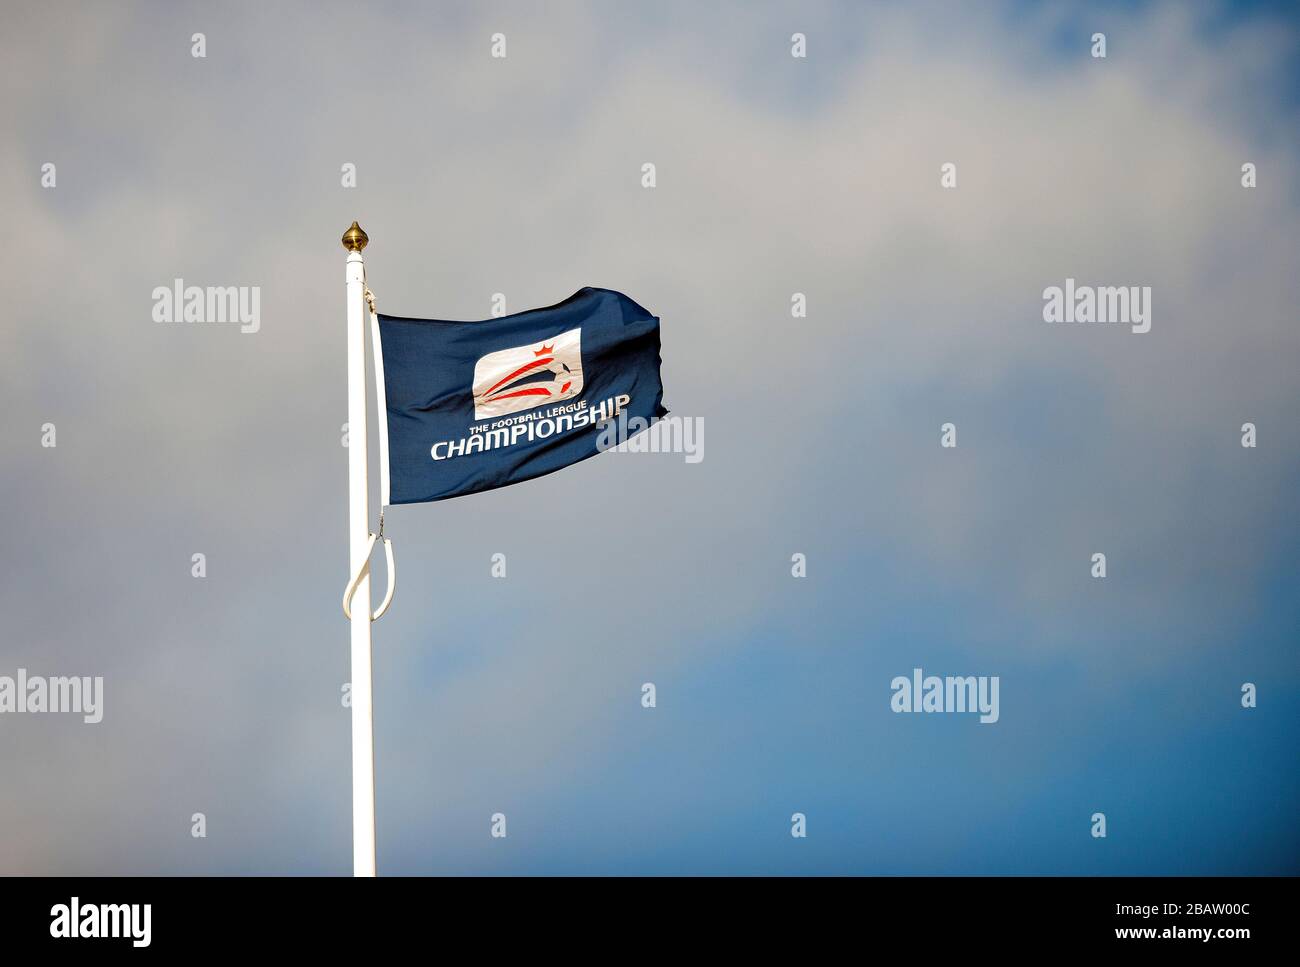 Un drapeau de ligue de football vole dans le ciel Banque D'Images